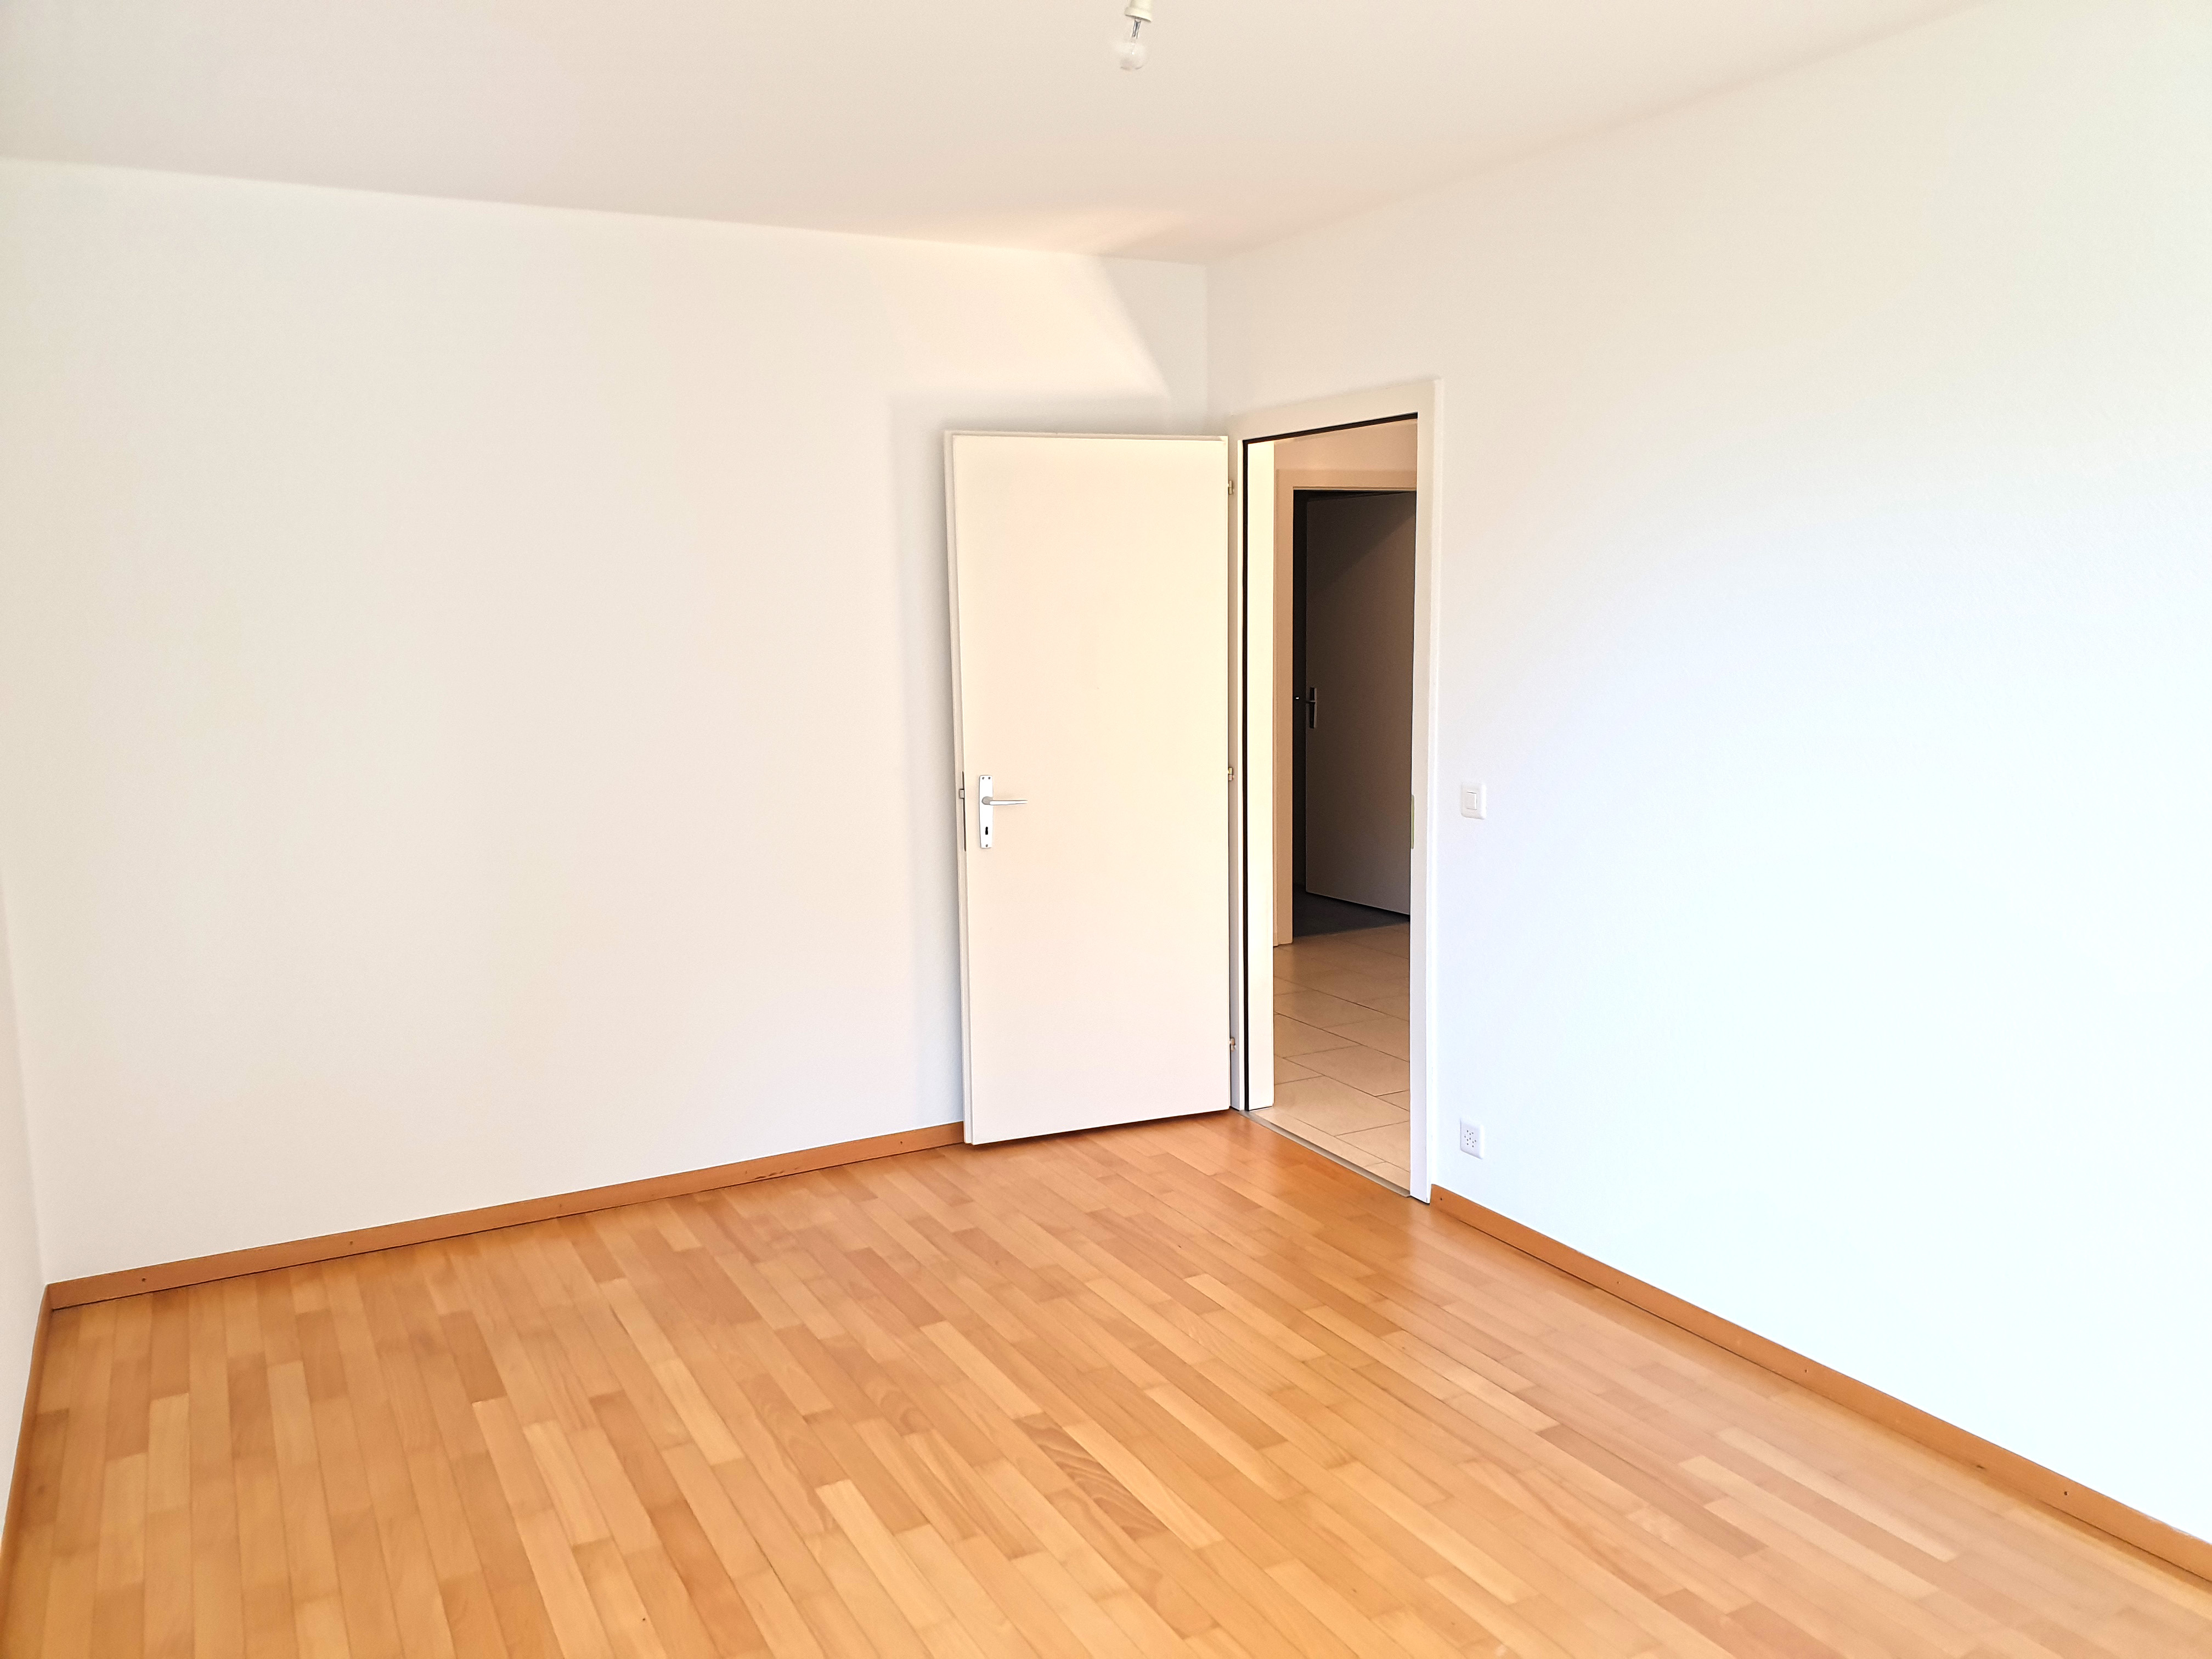 Bien immobilier - Montreux - Appartement 5.5 pièces